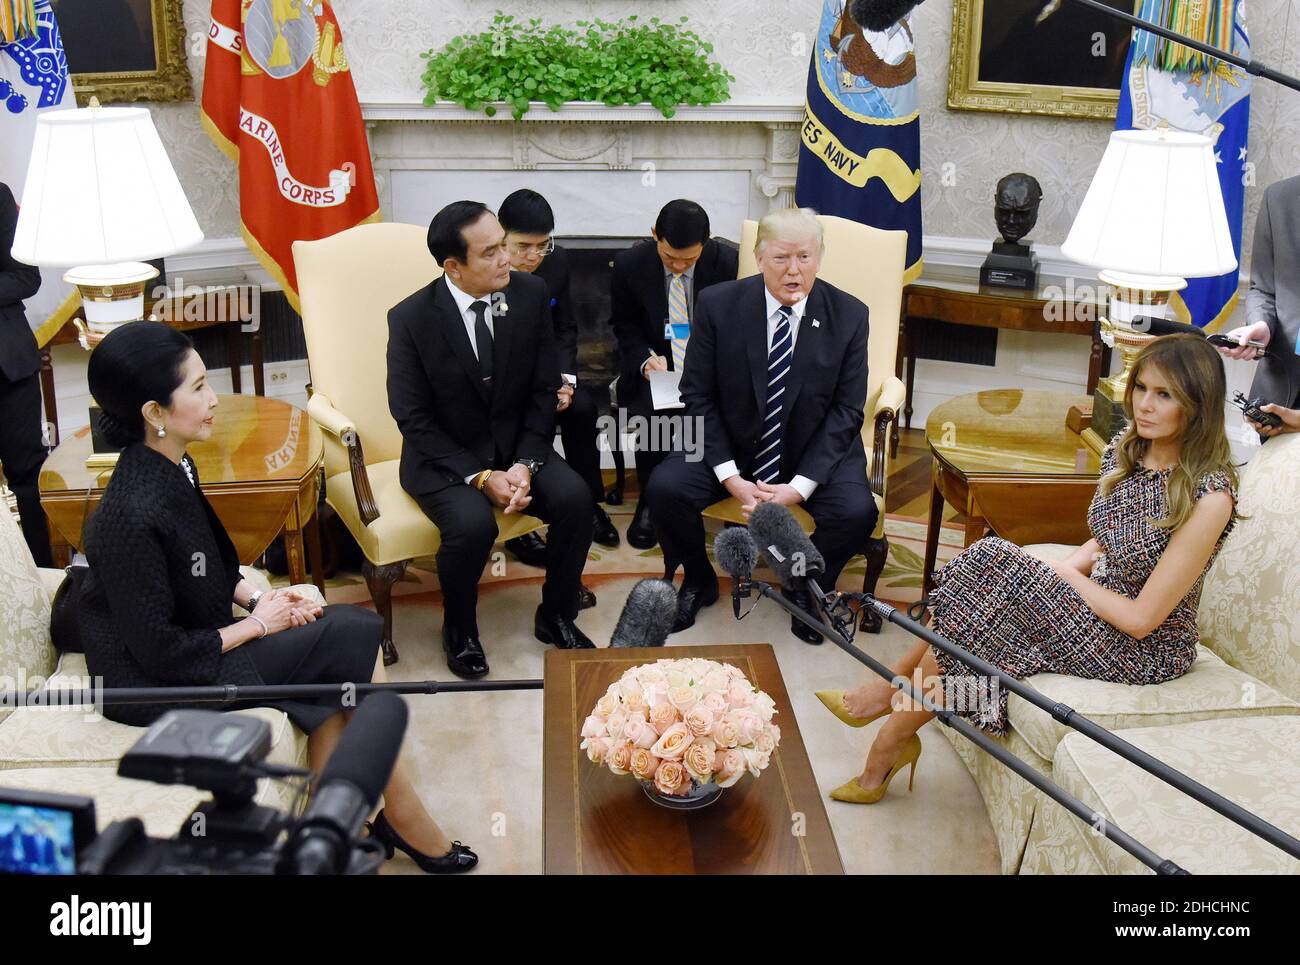 Präsident Donald Trump und First Lady Melania Trump heißen Premierminister Prayut Chan-o-cha und Frau Chan-o-Cha aus Thailand im Oval Office des Weißen Hauses in Washington, DC, 2. Oktober 2017 willkommen. Foto von Olivier Douliery/ Abaca Press Stockfoto